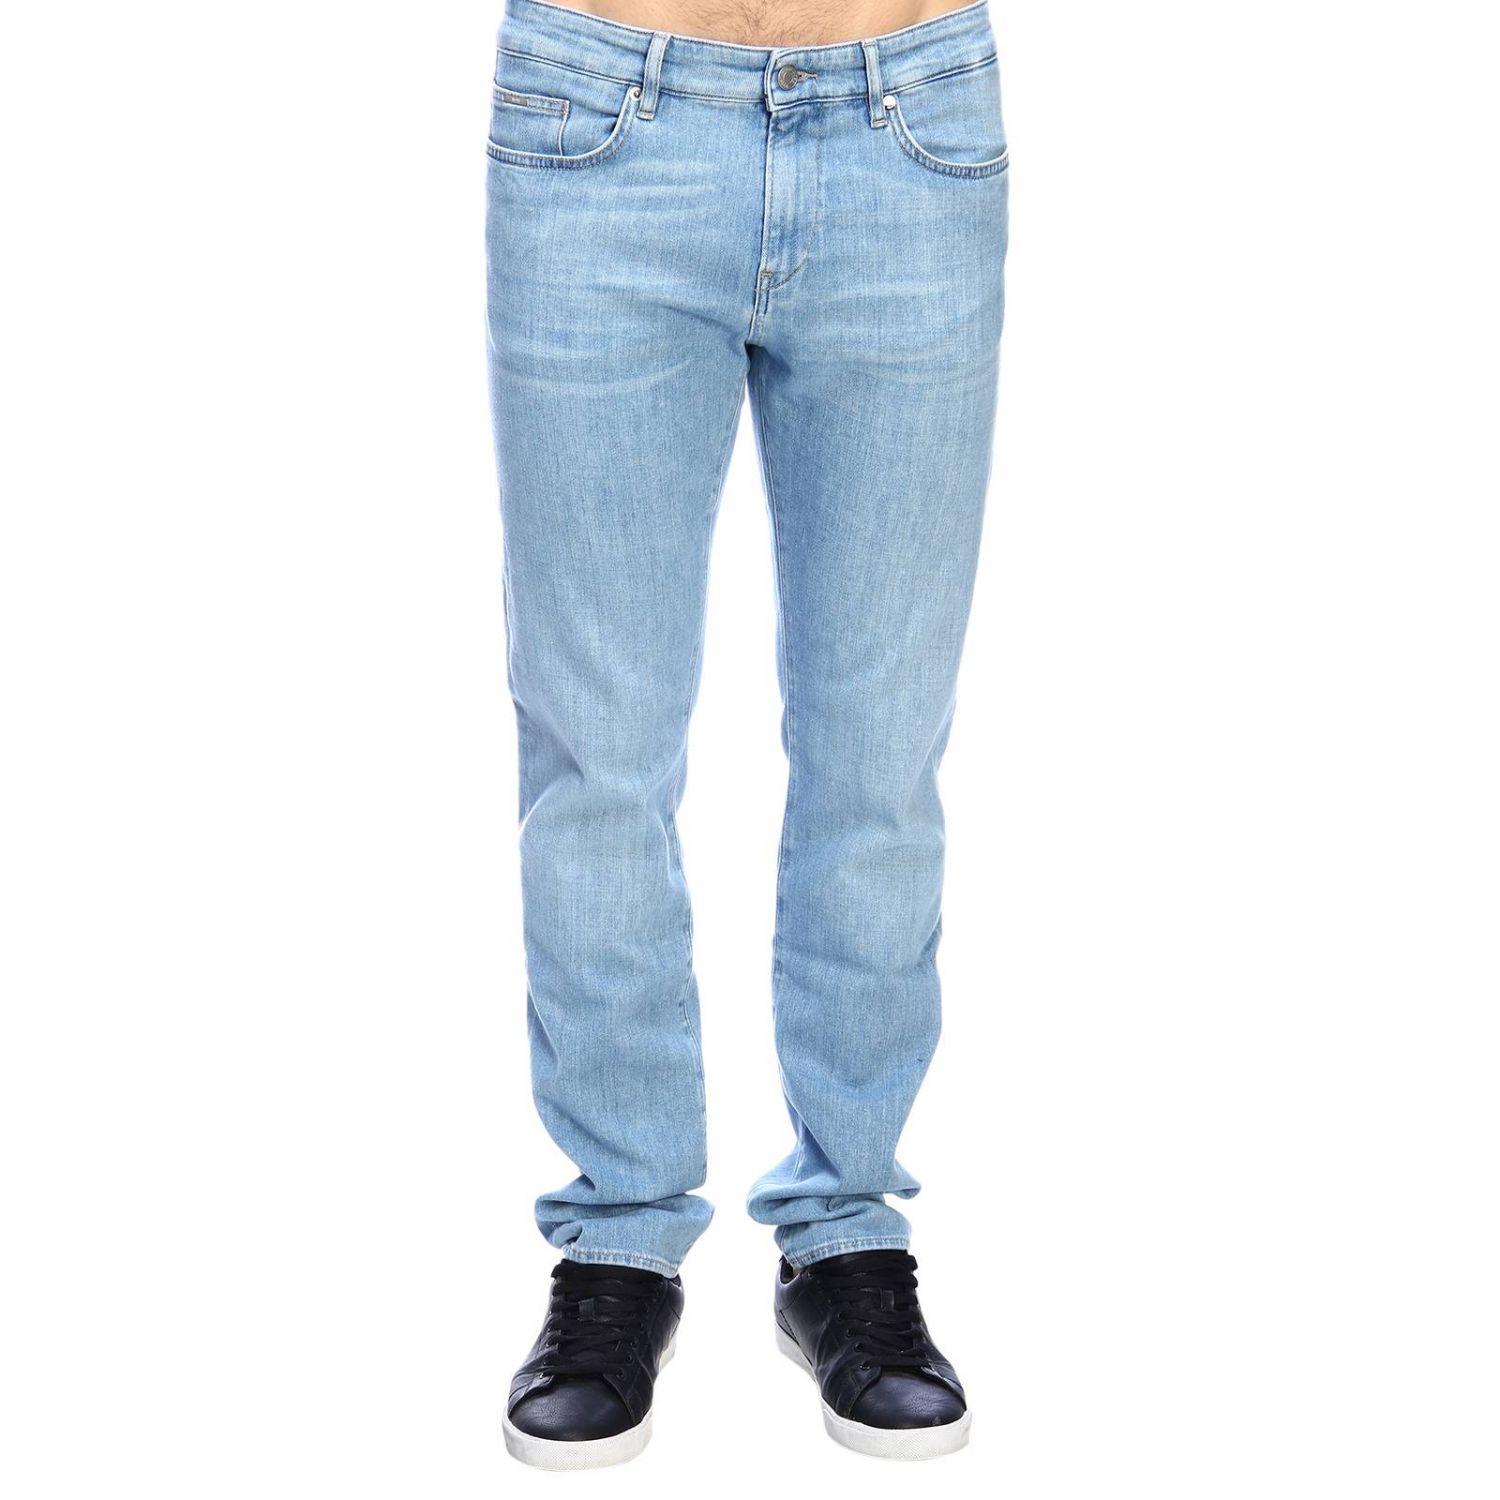 Hugo Boss Outlet: Jeans men | Jeans Hugo Boss Men Denim | Jeans Hugo Boss  3110215848 DELAWARE Giglio EN